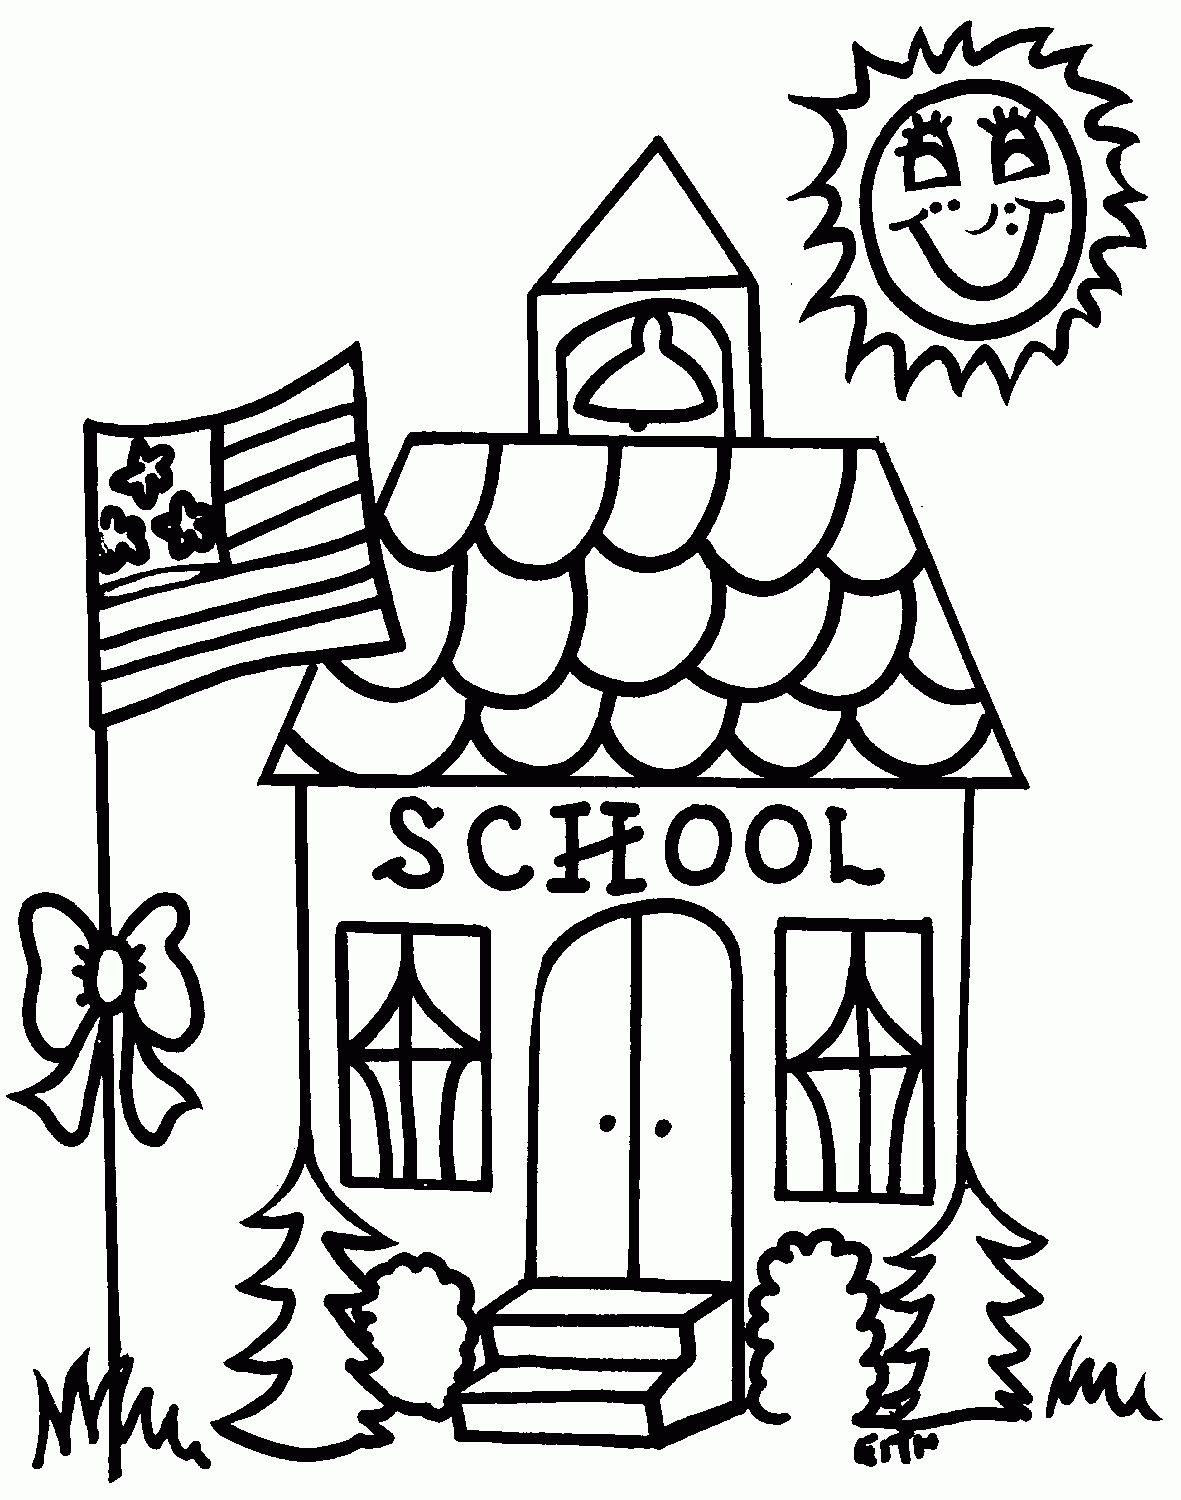 School Building Coloring Page